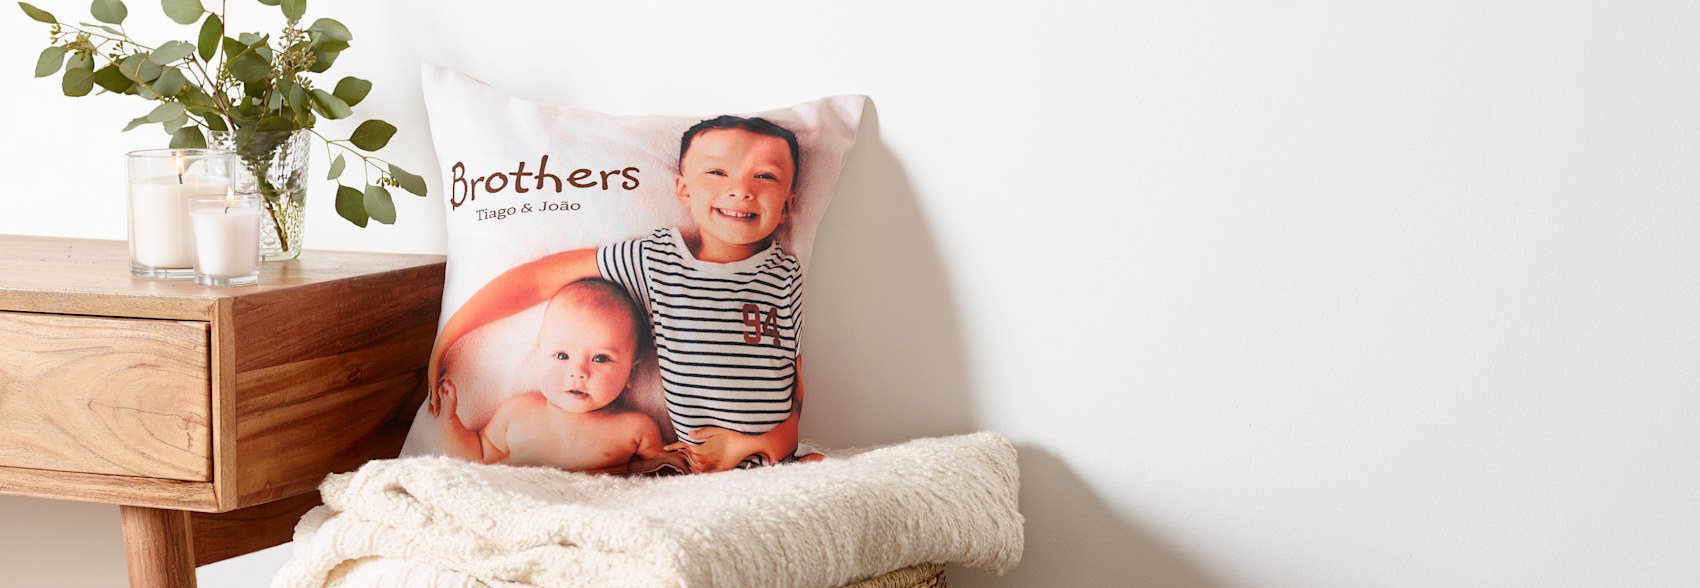  almofada personalizada com foto de criança